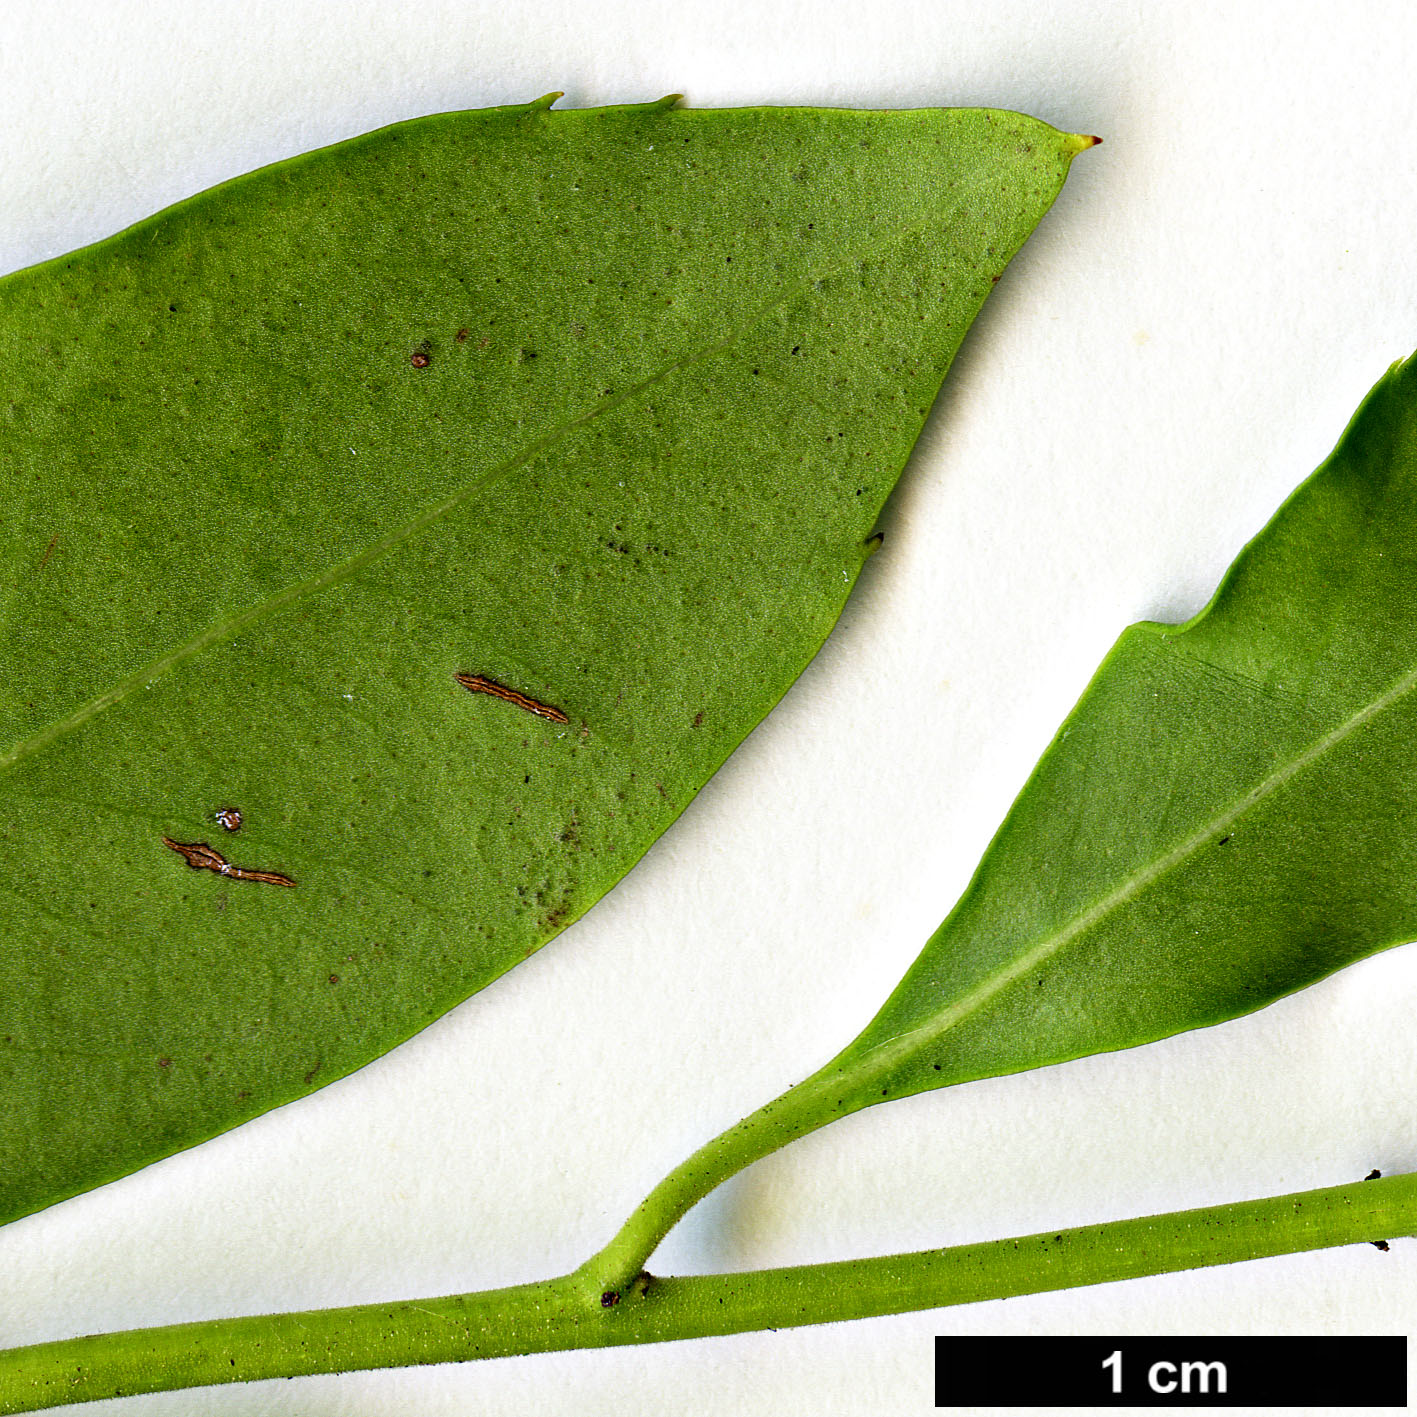 High resolution image: Family: Aquifoliaceae - Genus: Ilex - Taxon: coriacea